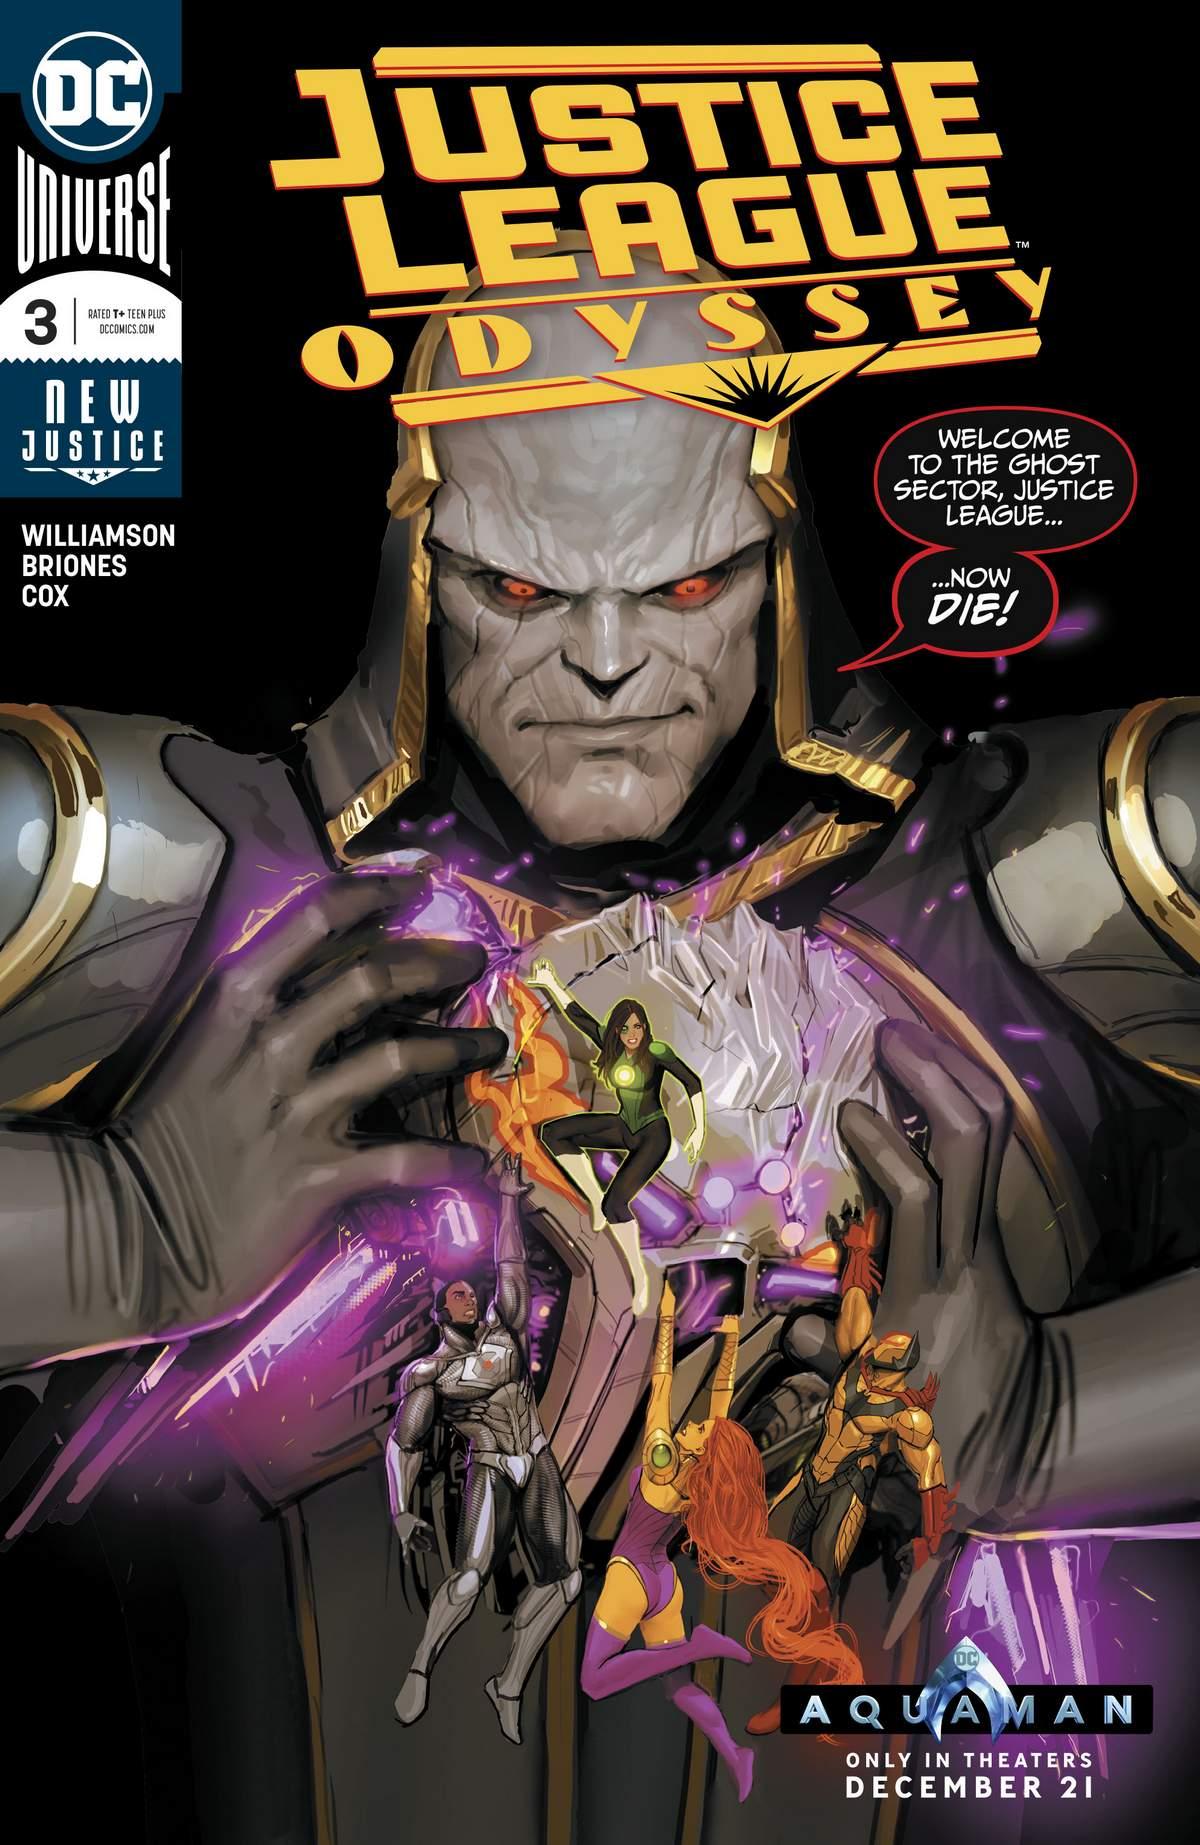 Justice League Odyssey Vol. 1 #3